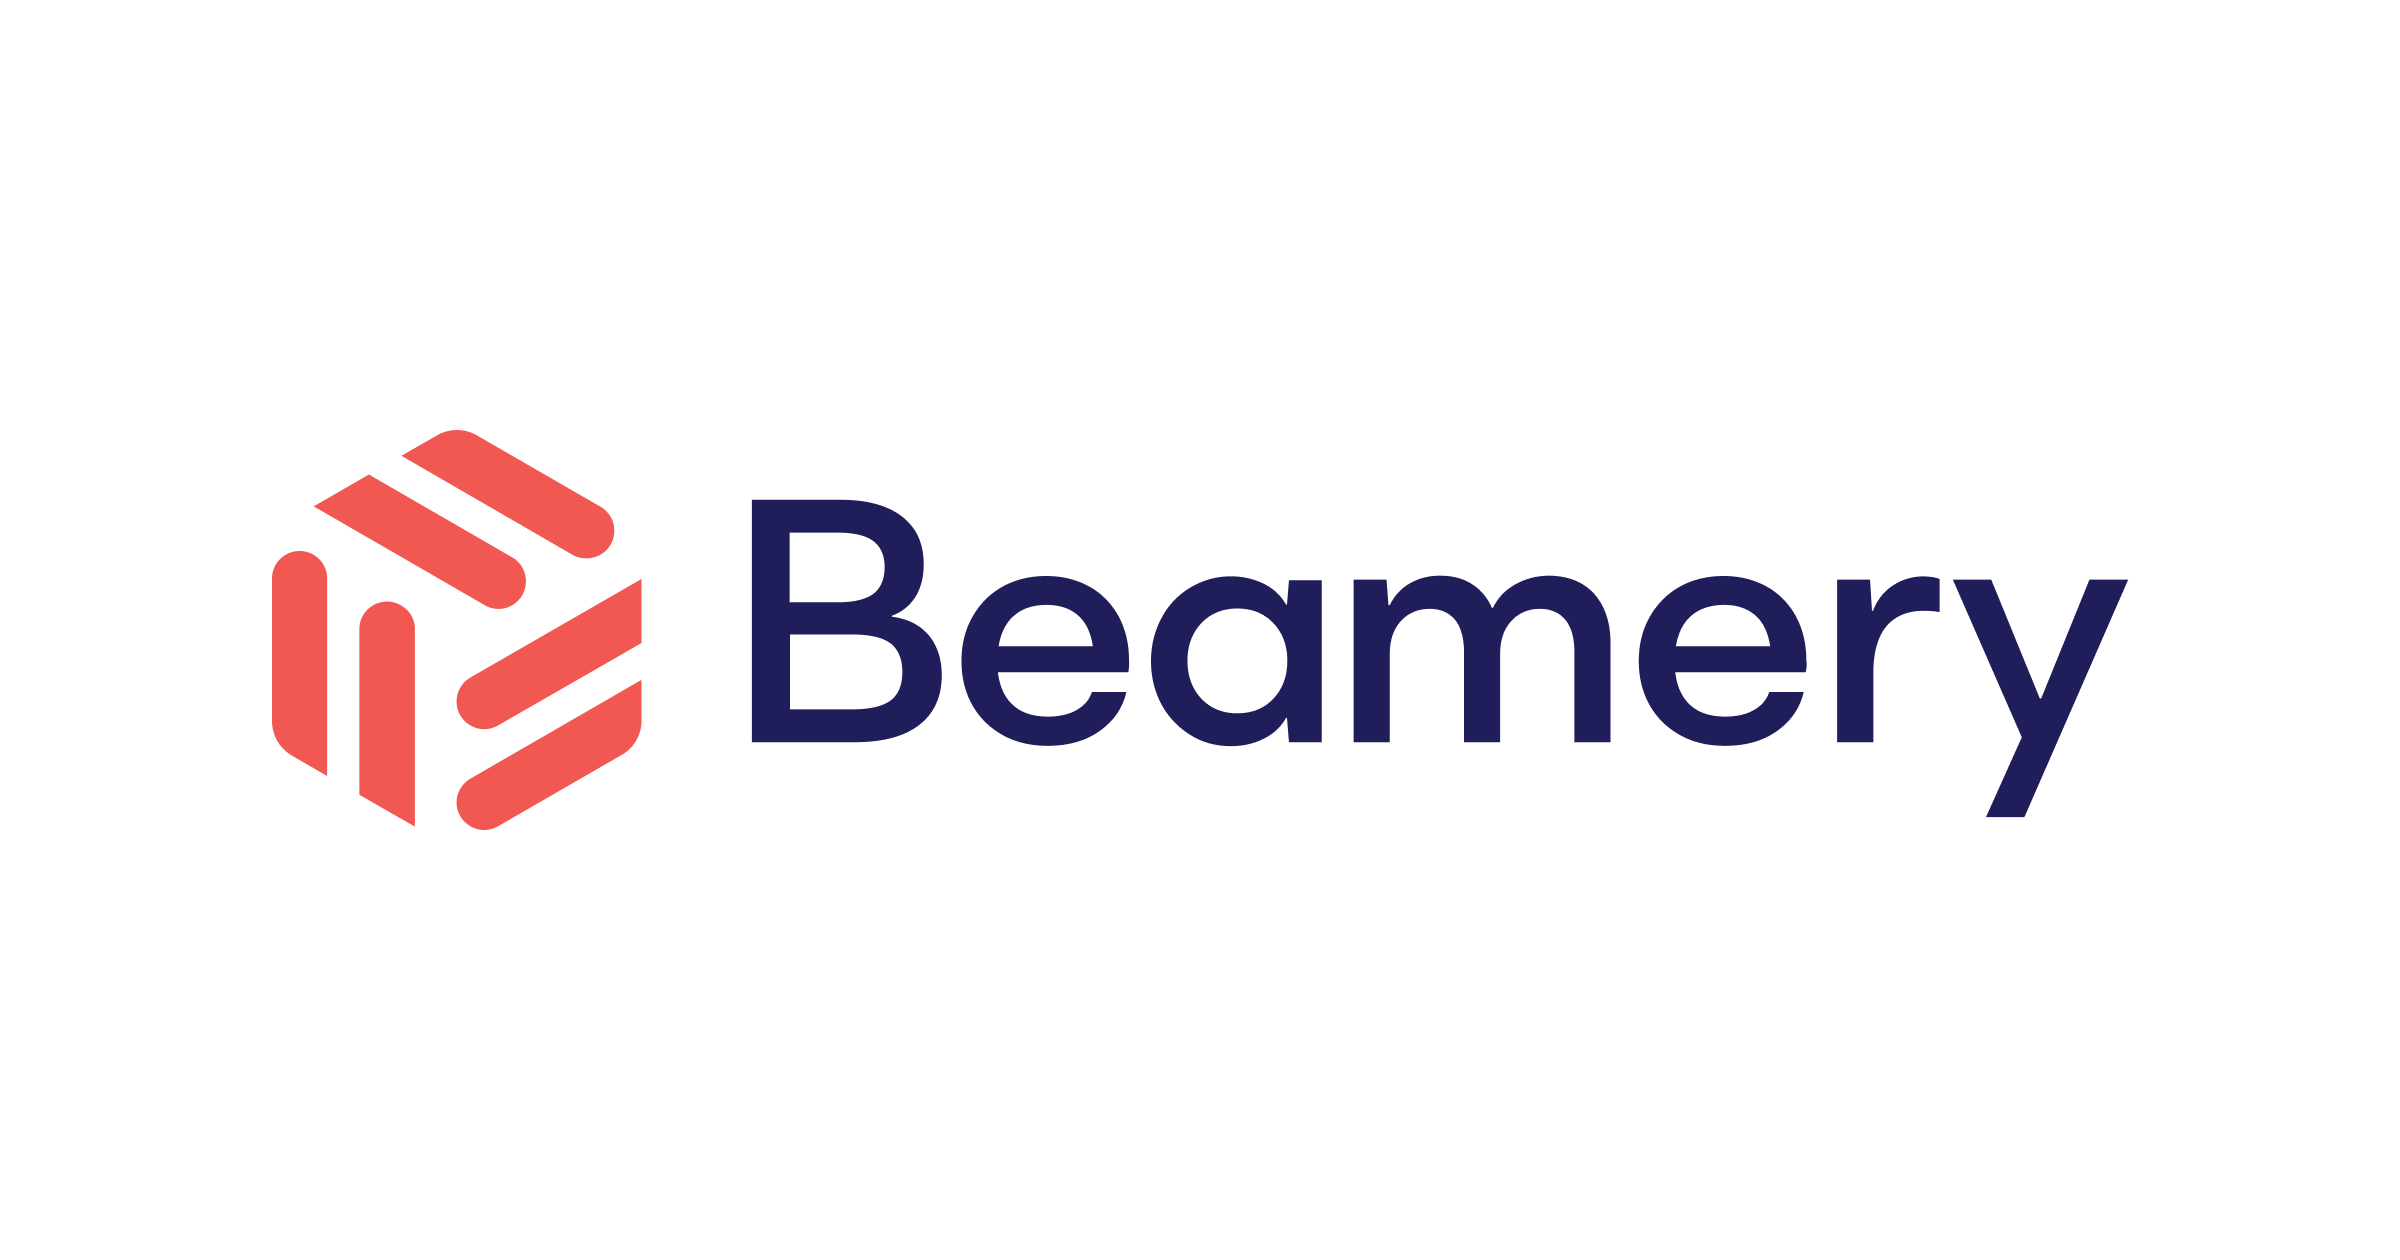 Beamery logo